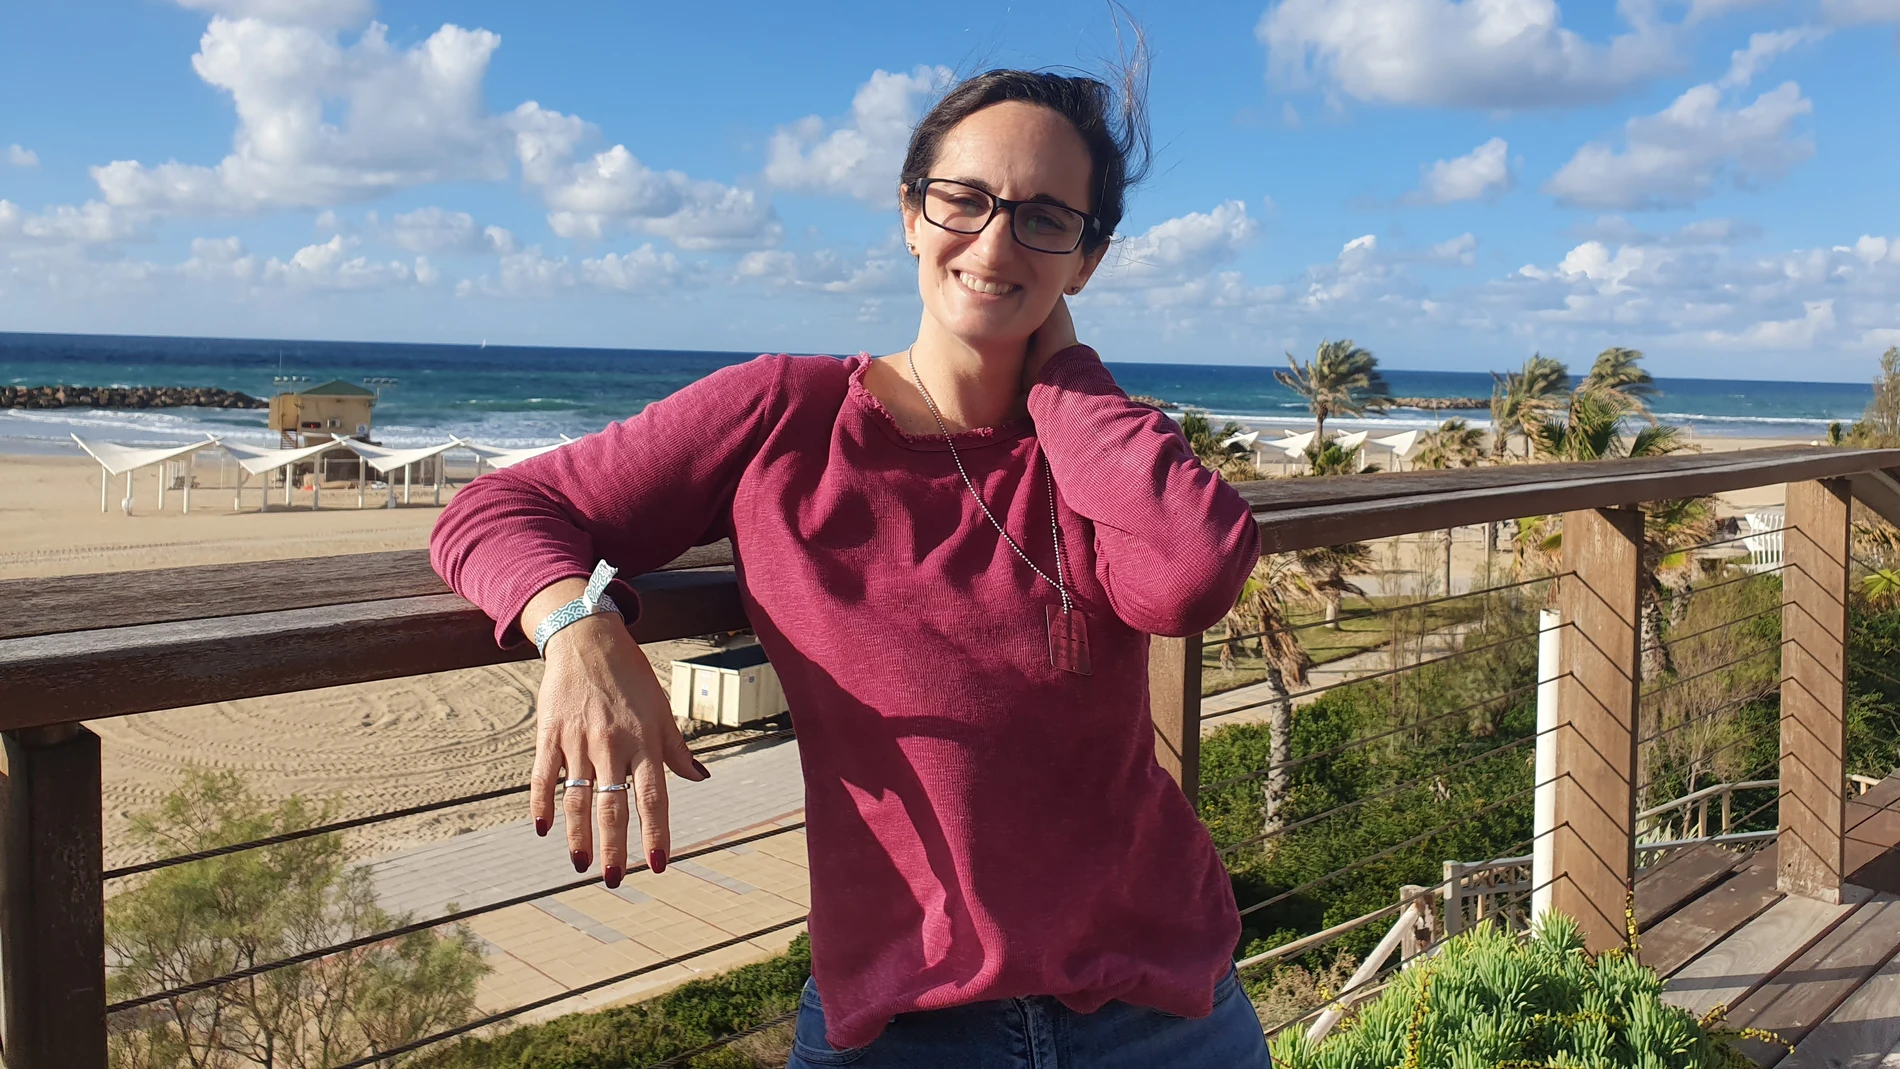 Galia Sopher, desplazada en un hotel de Tel Aviv